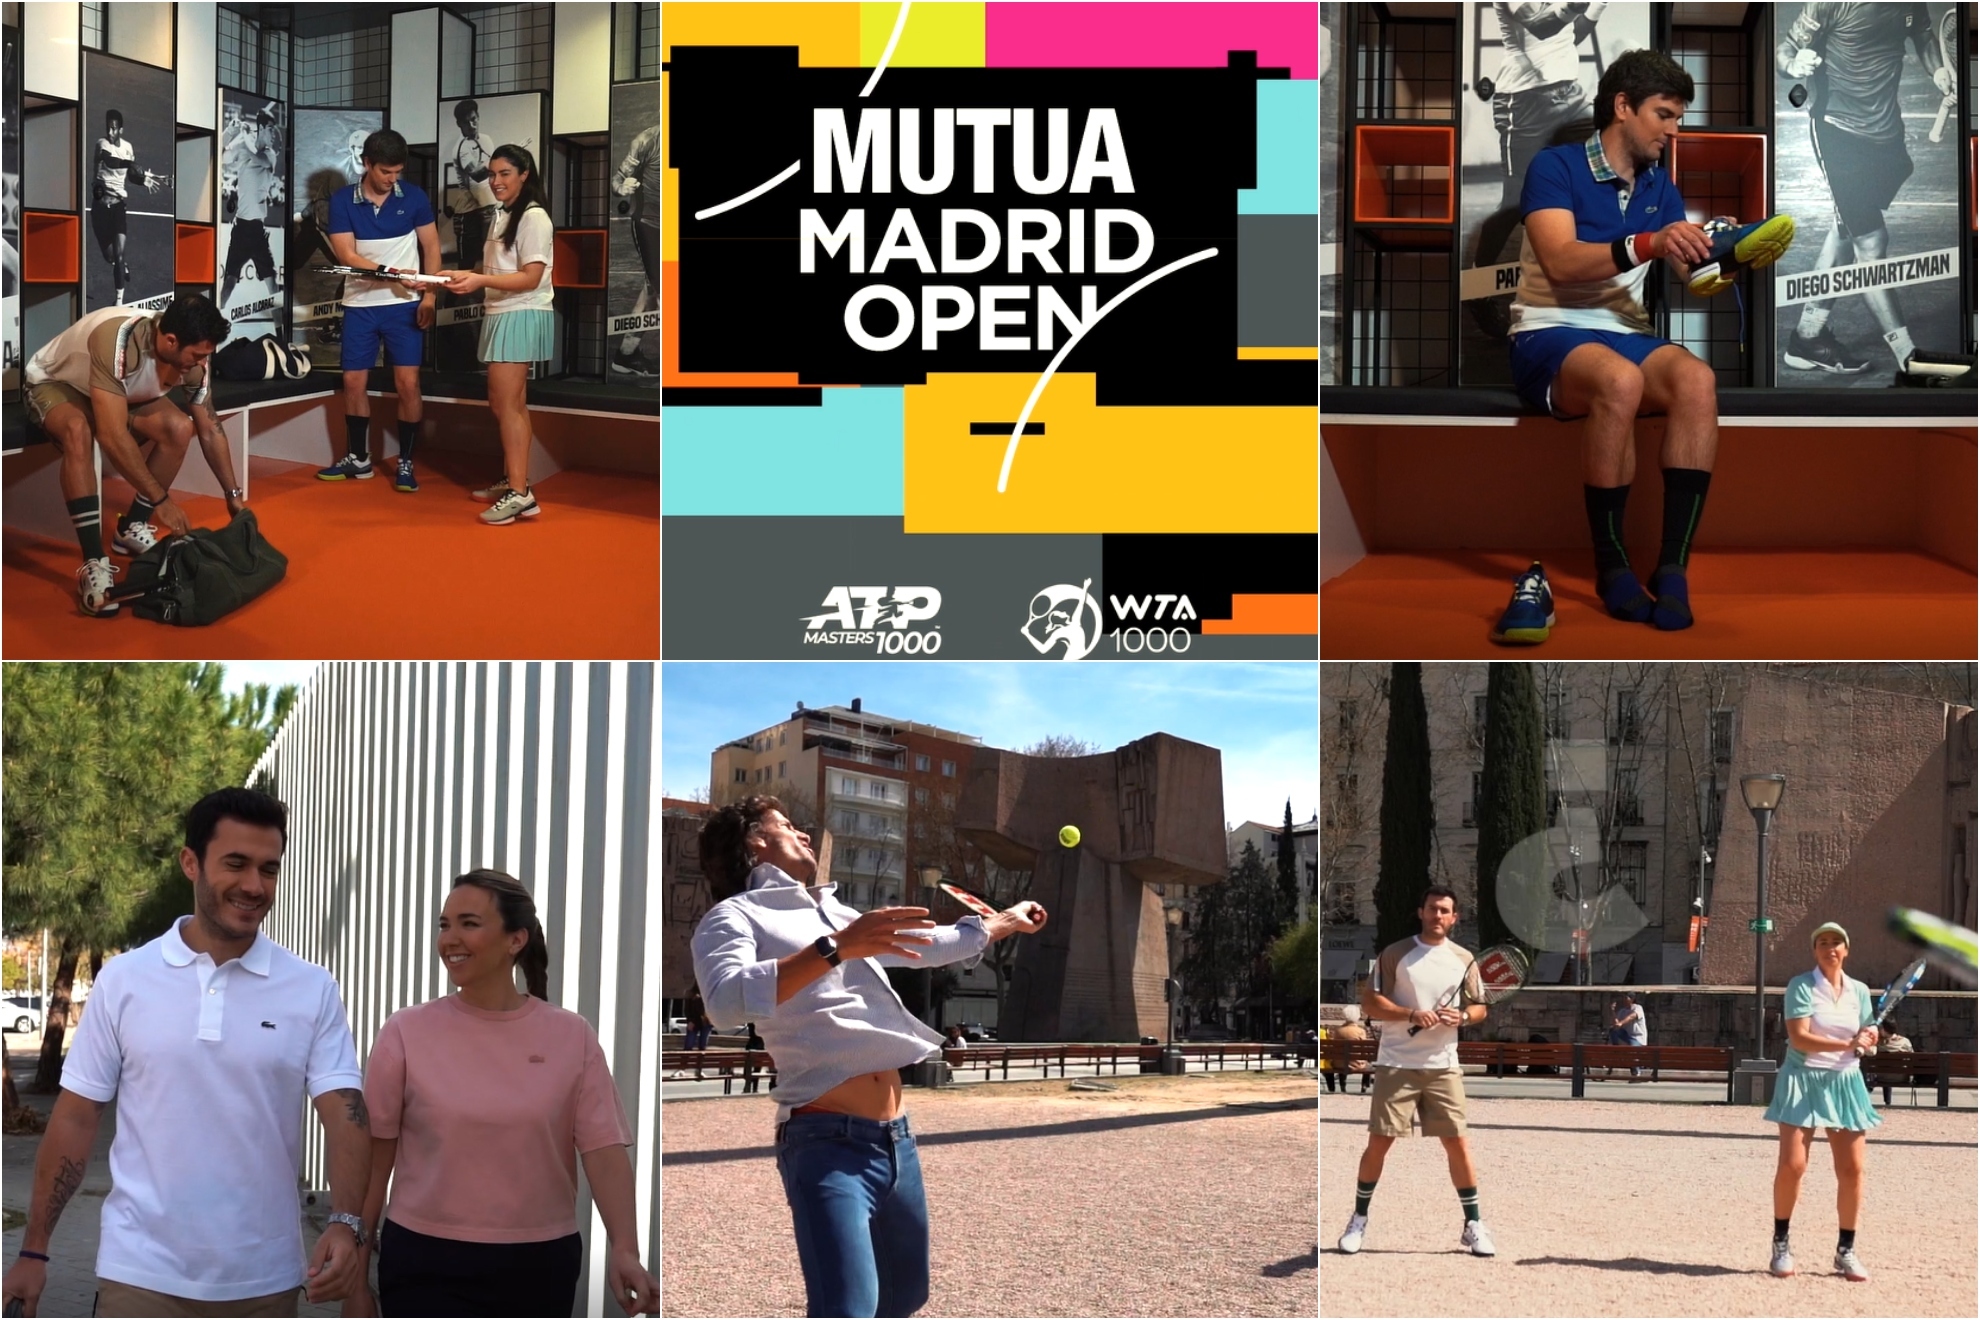 El Mutua Madrid Open est tramando algo muy grande en la Plaza de Coln